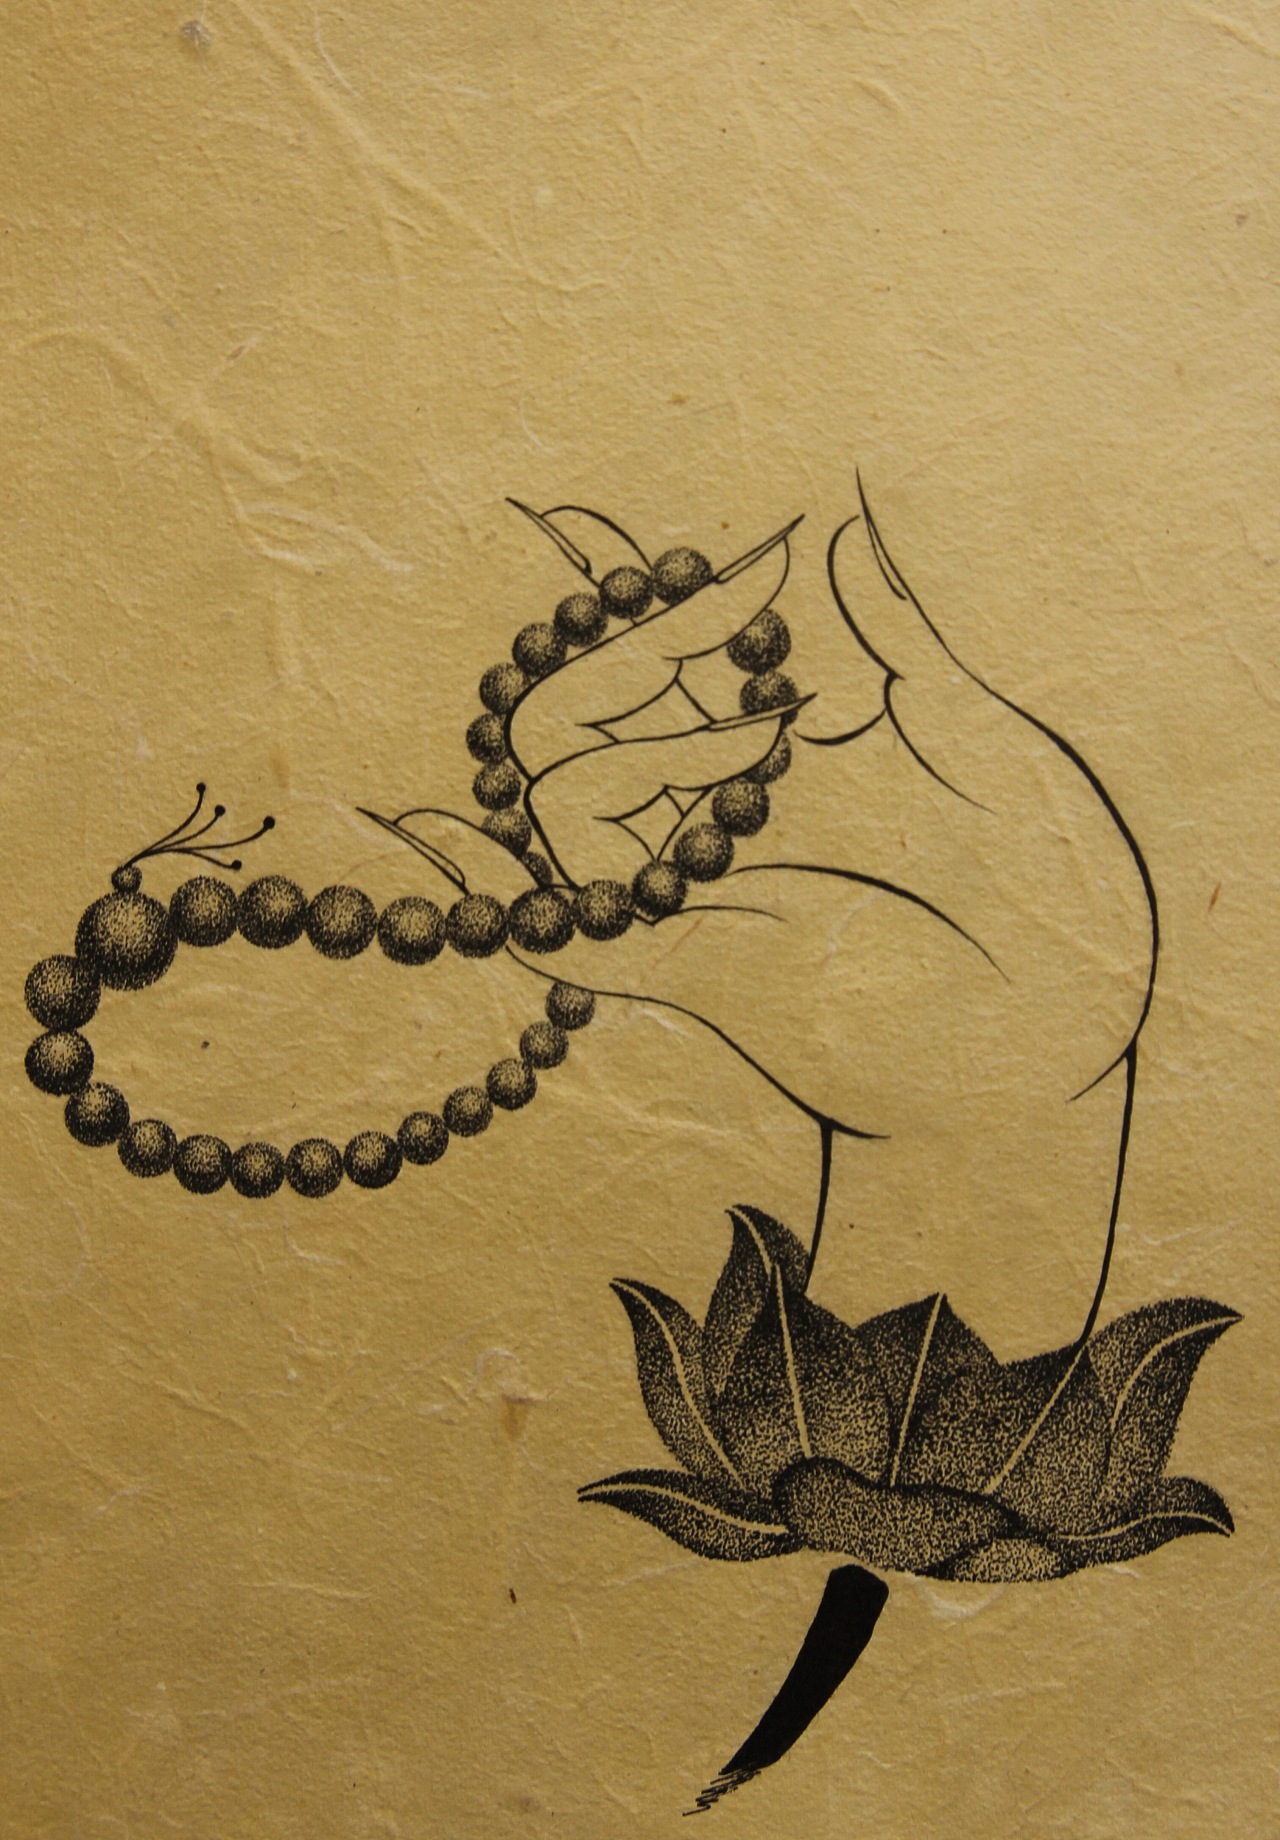 双手合十矢量佛教符号图片素材免费下载 - 觅知网